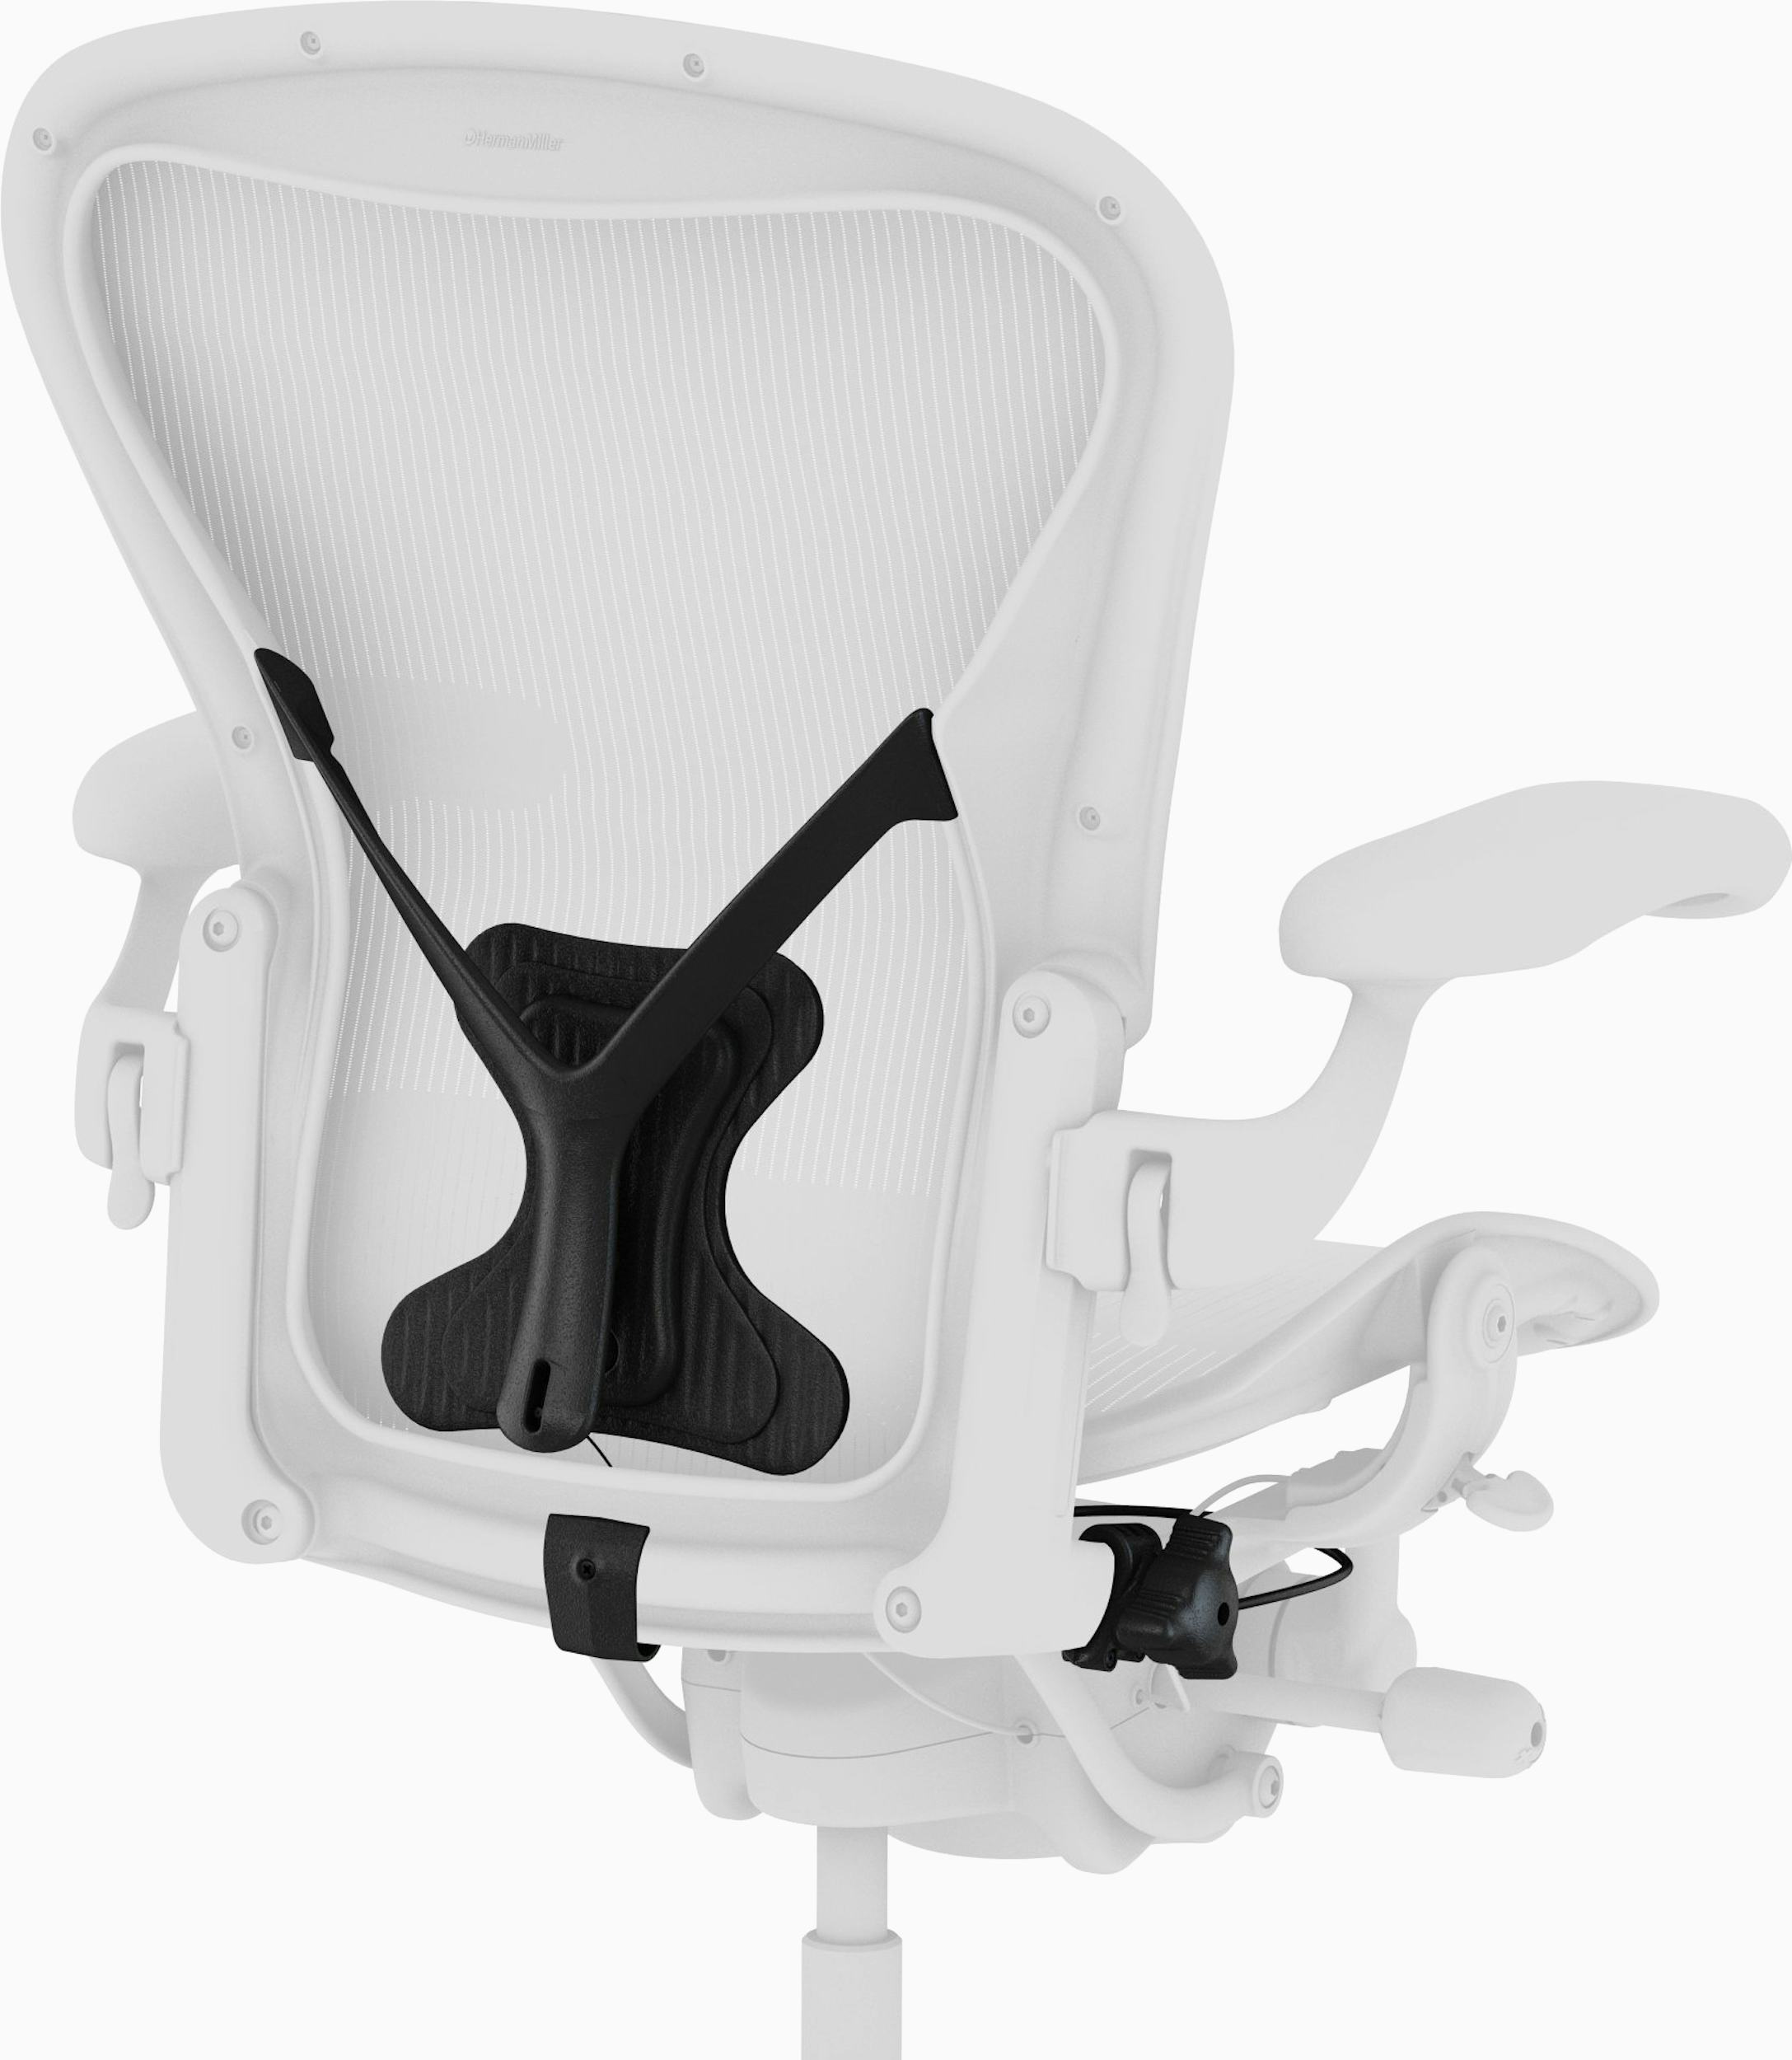 BacksmithTM Adjustable Chair Support